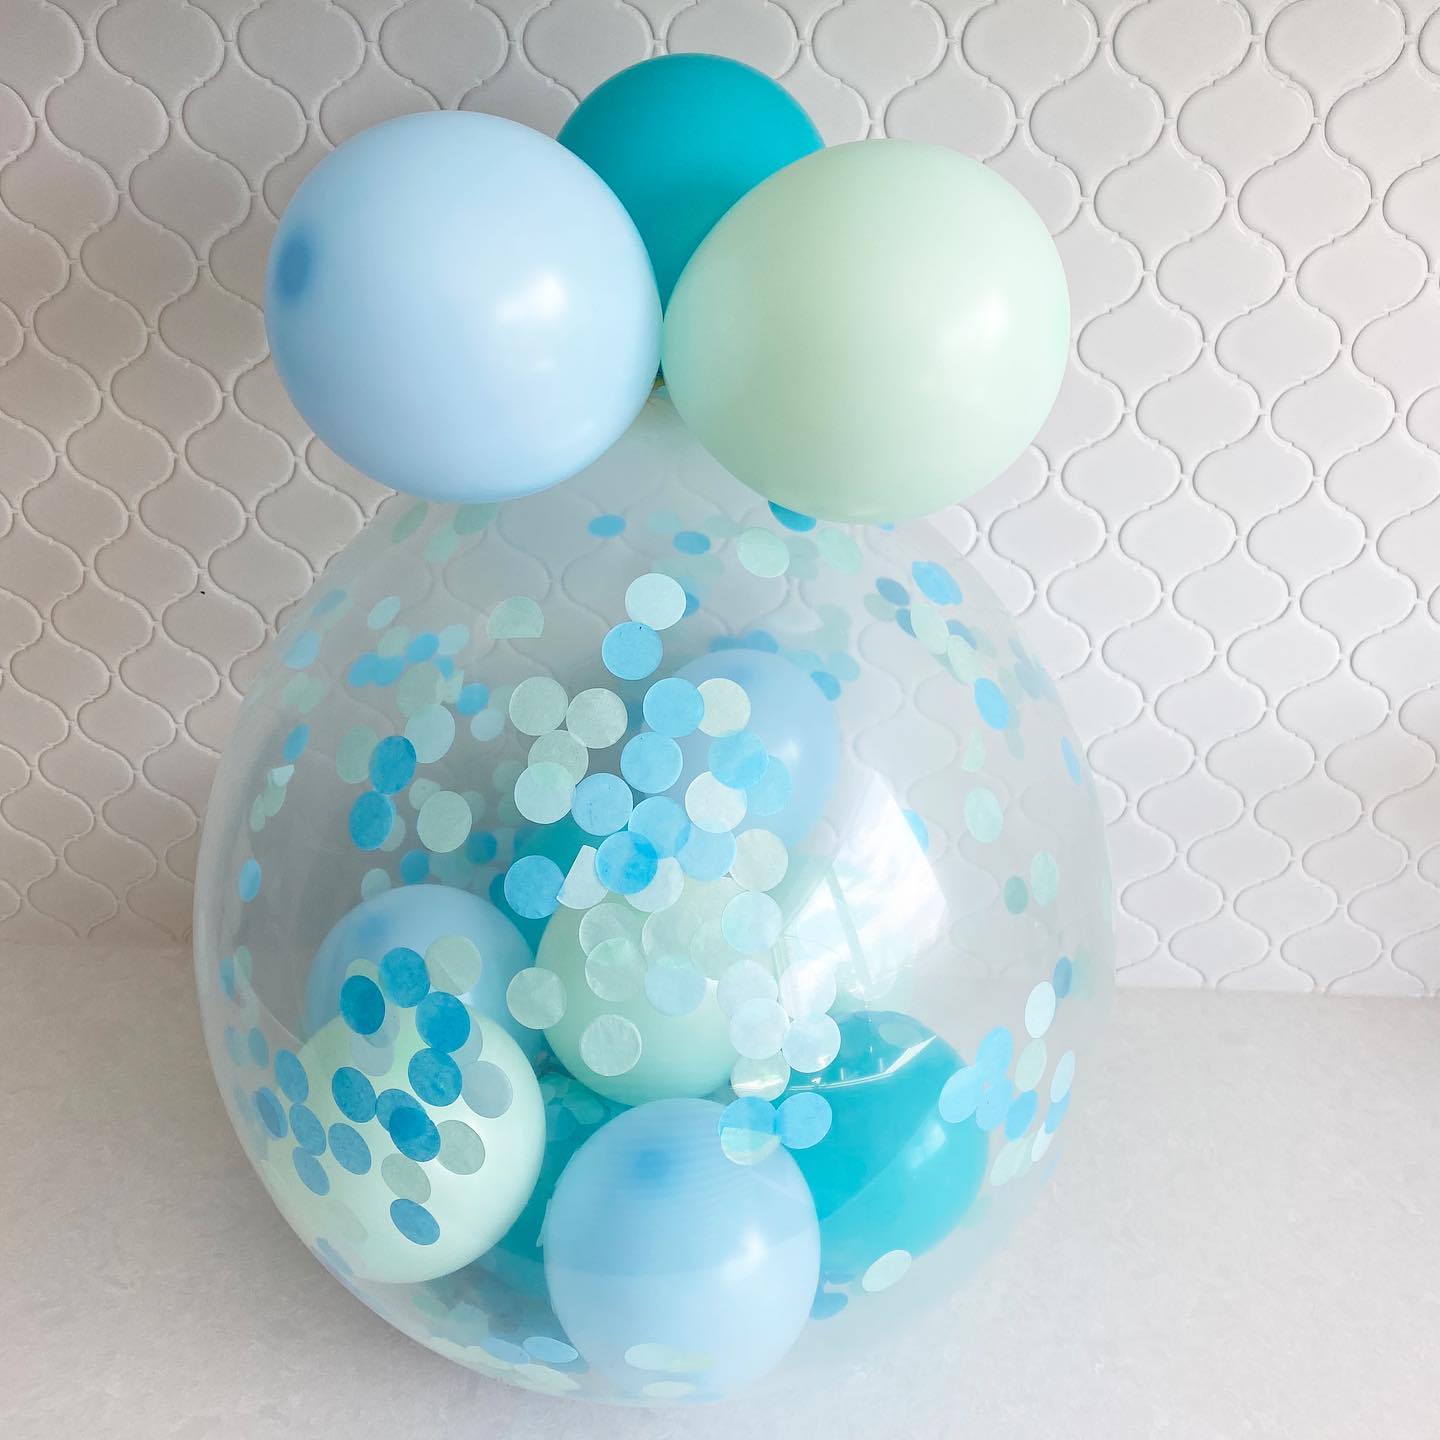 Balloon Emporium Co